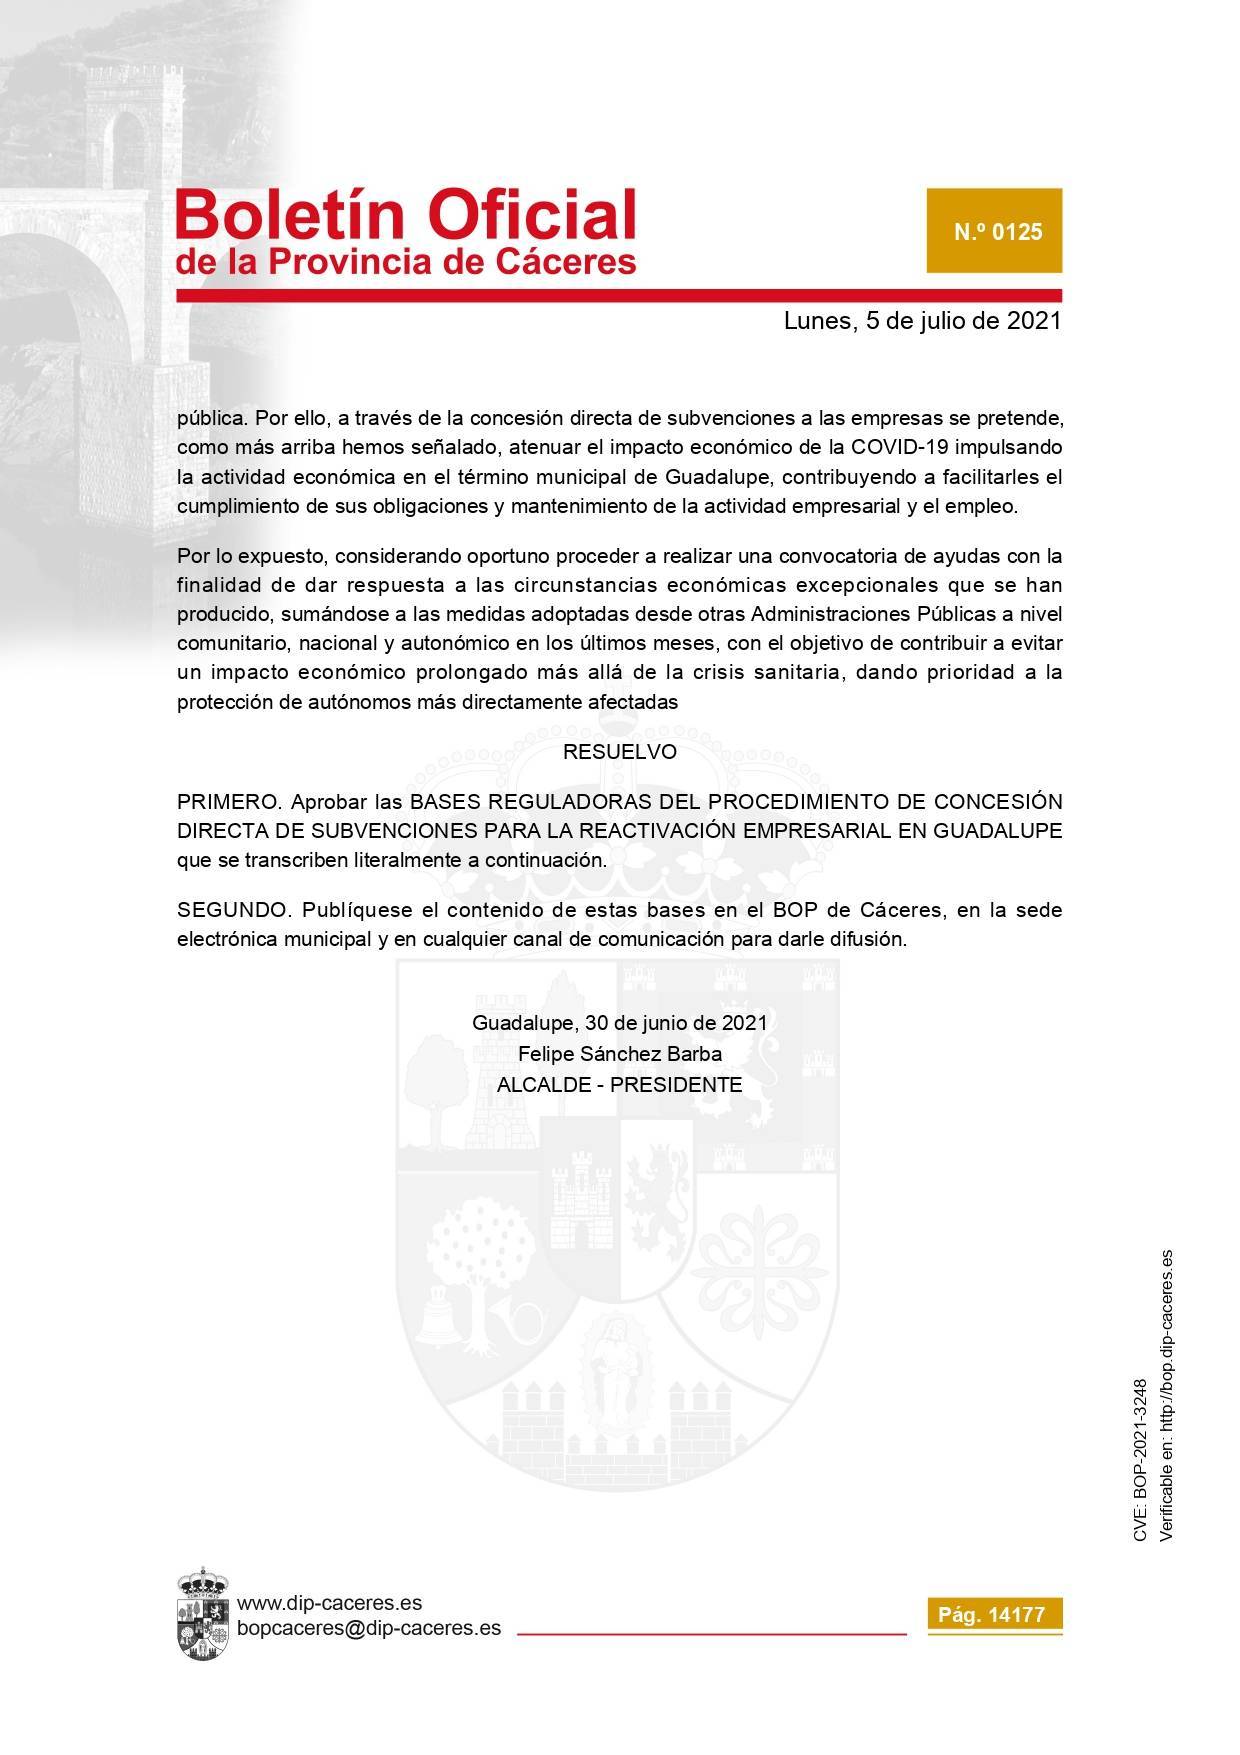 Concesión de subvenciones para la reactivación empresarial (2021) - Guadalupe (Cáceres) 2